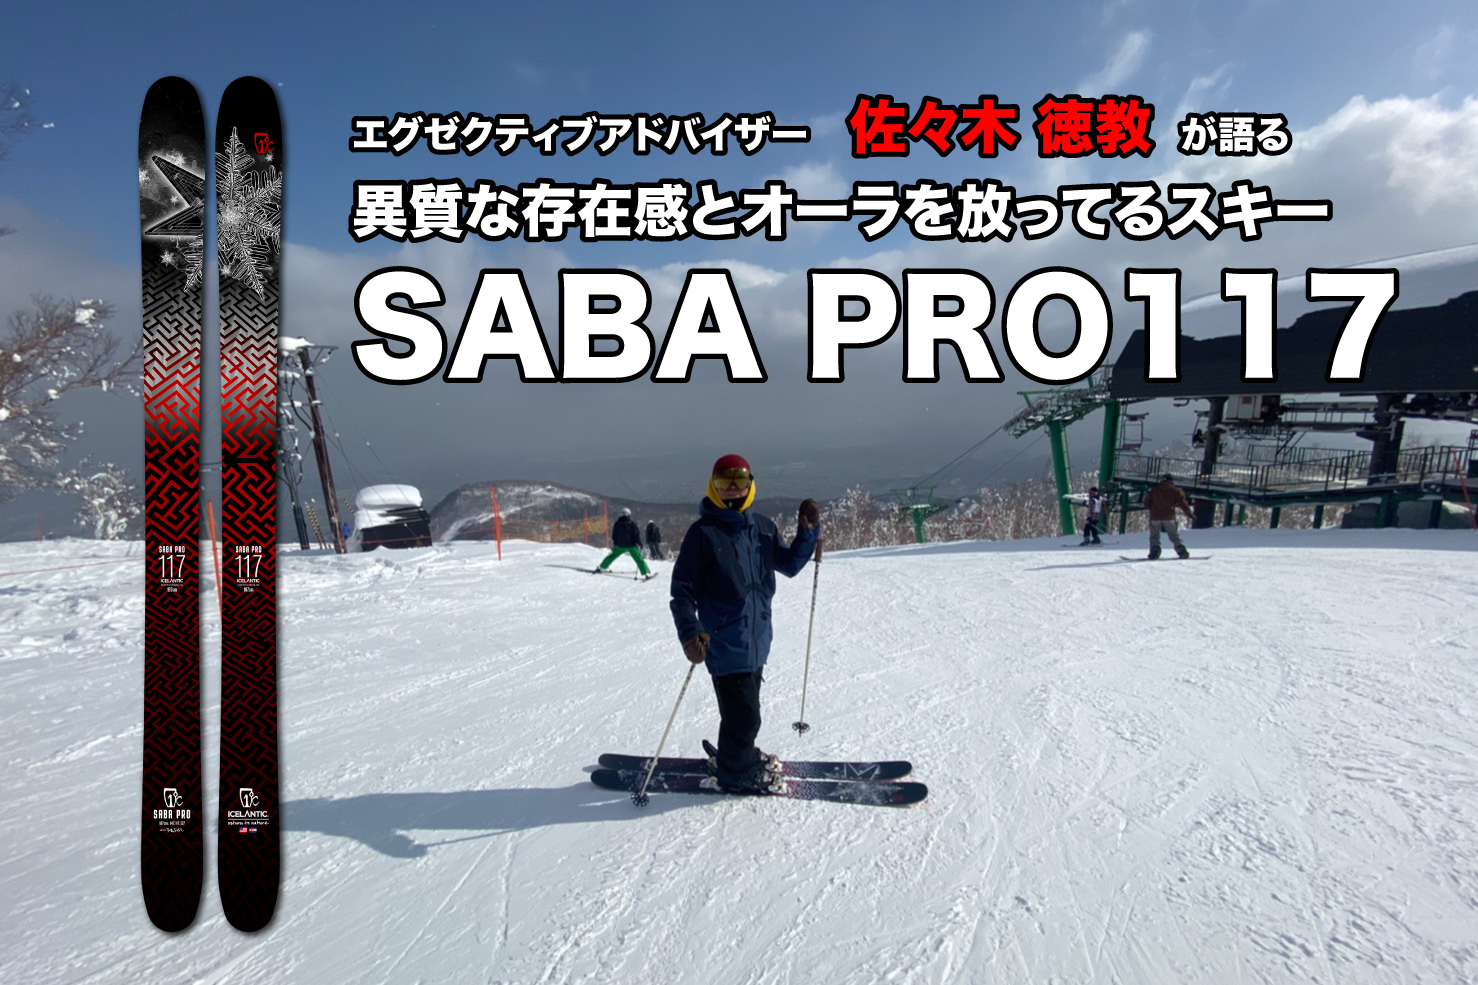 異質な存在感とオーラを放ってるスキー【SABA PRO 117】